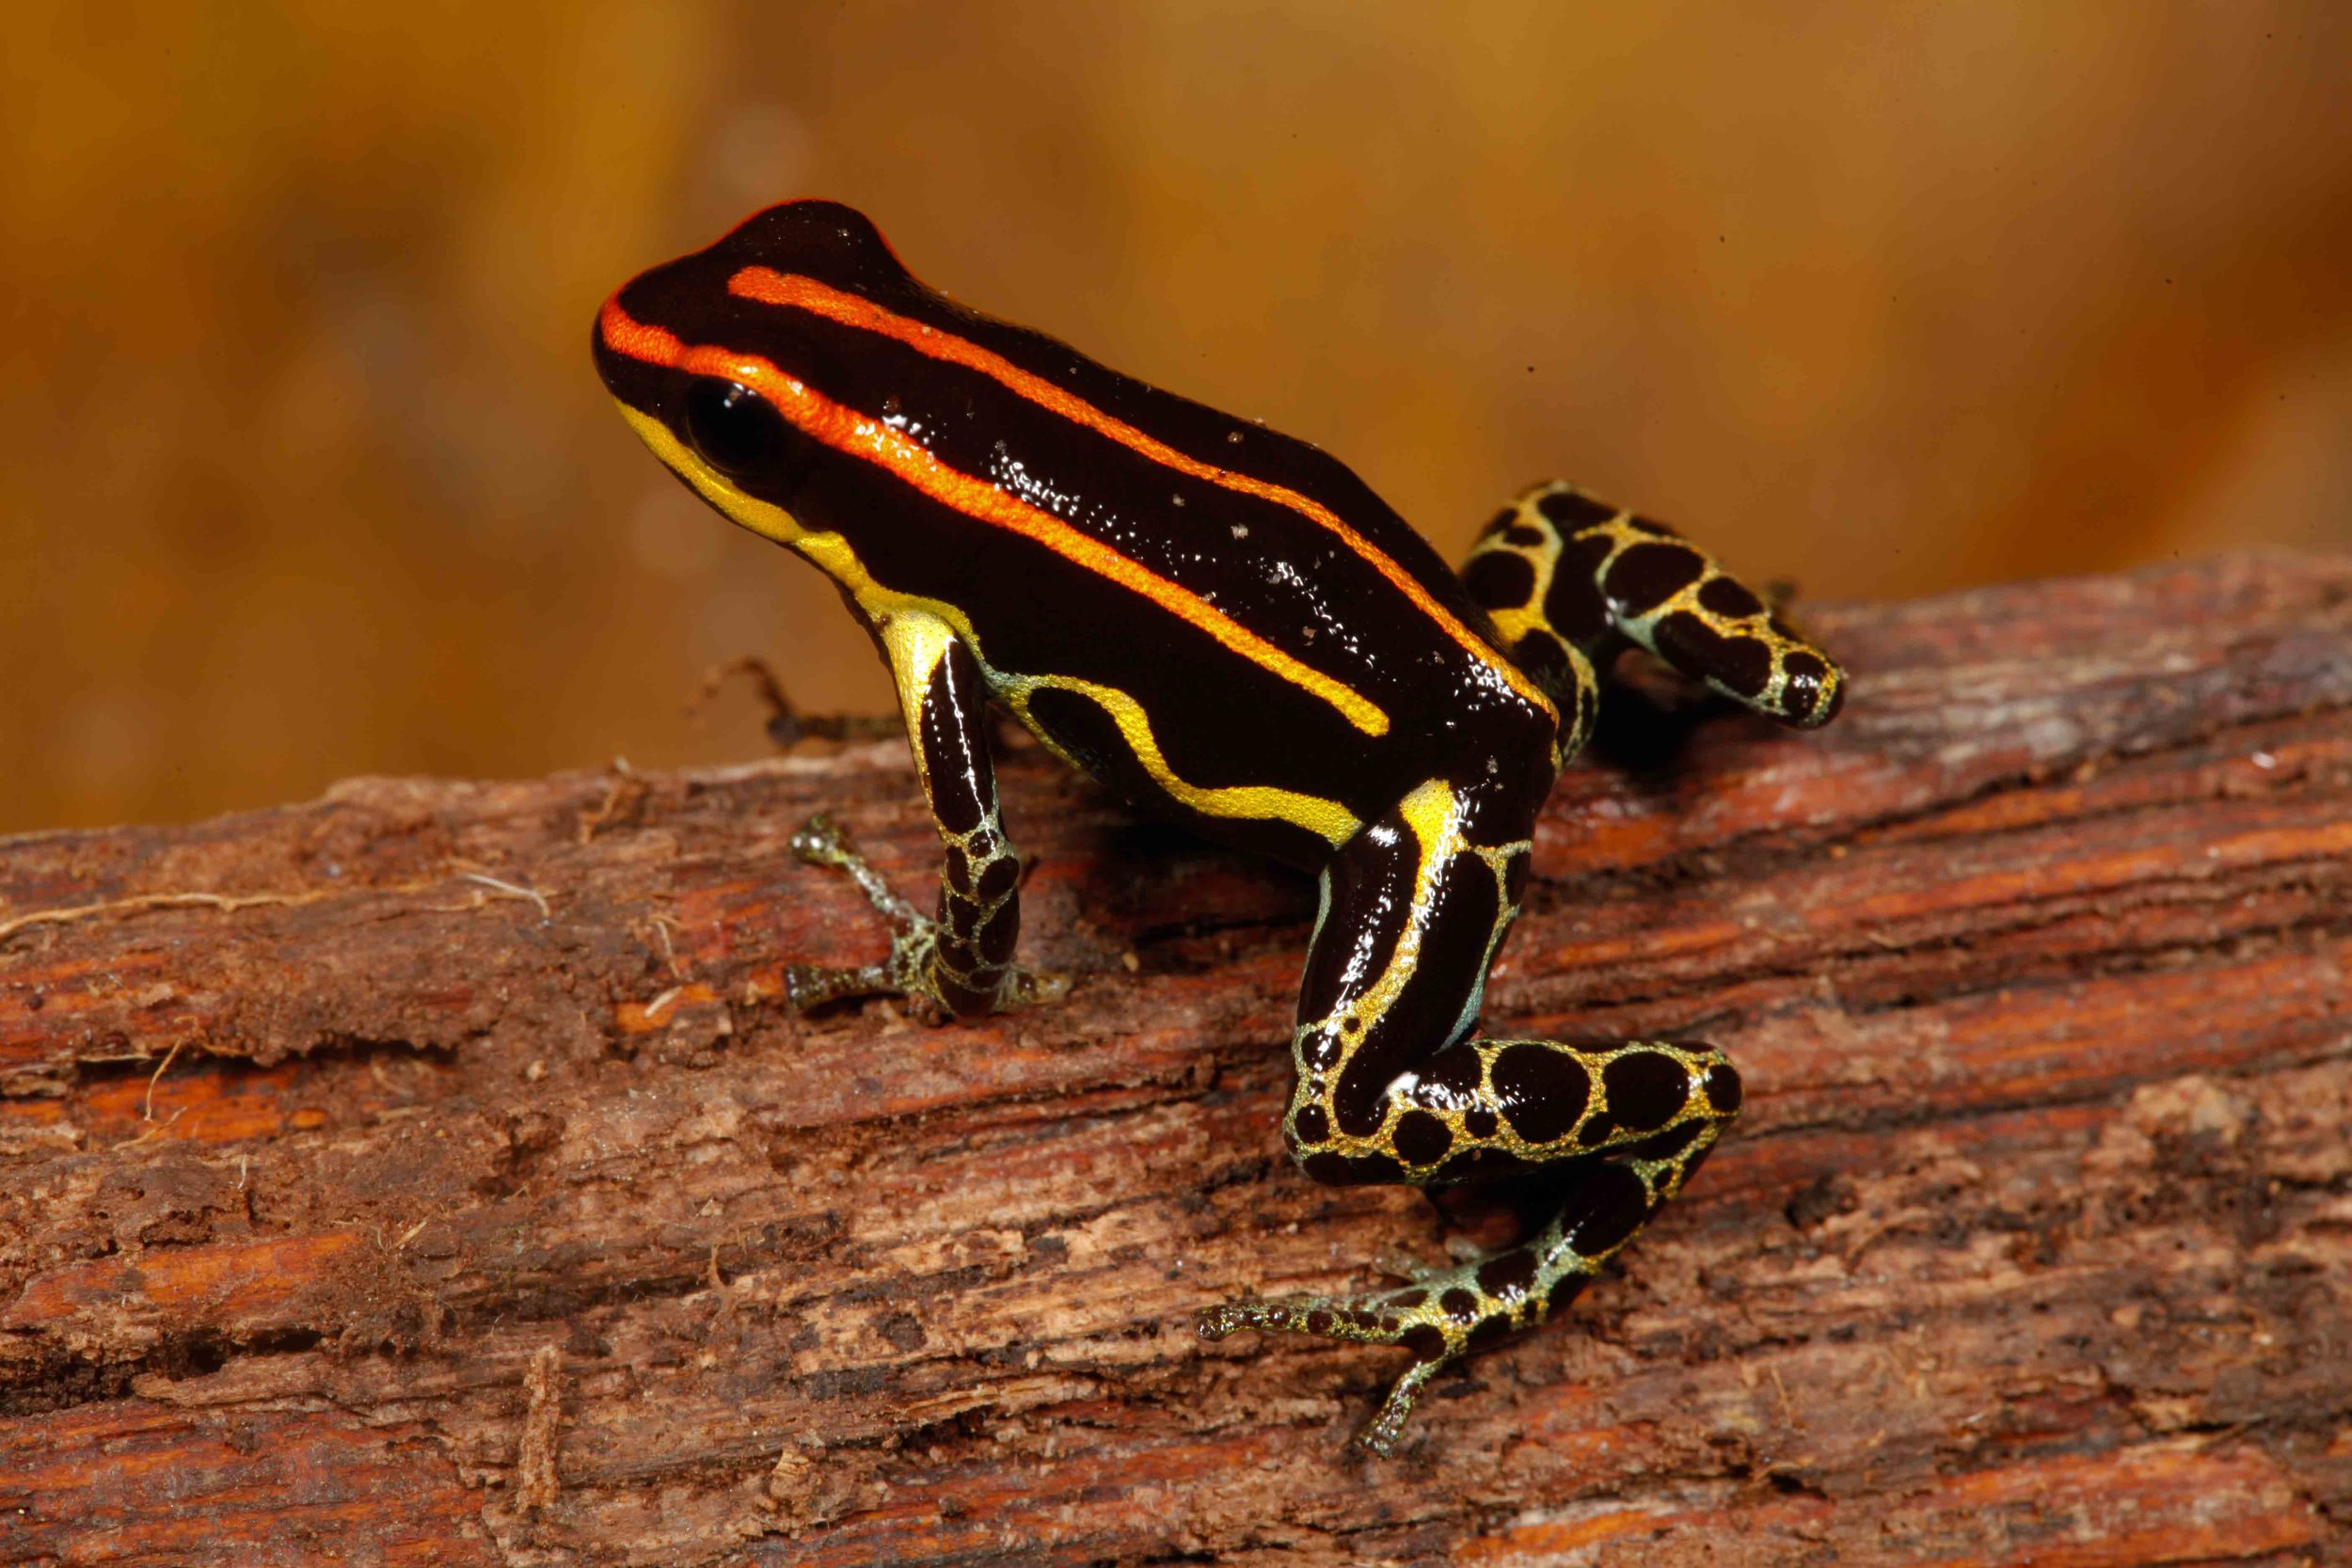 Ranitomeya uakarii, Peruvian Amazon Poison Frog (Photo by Matt Cage)